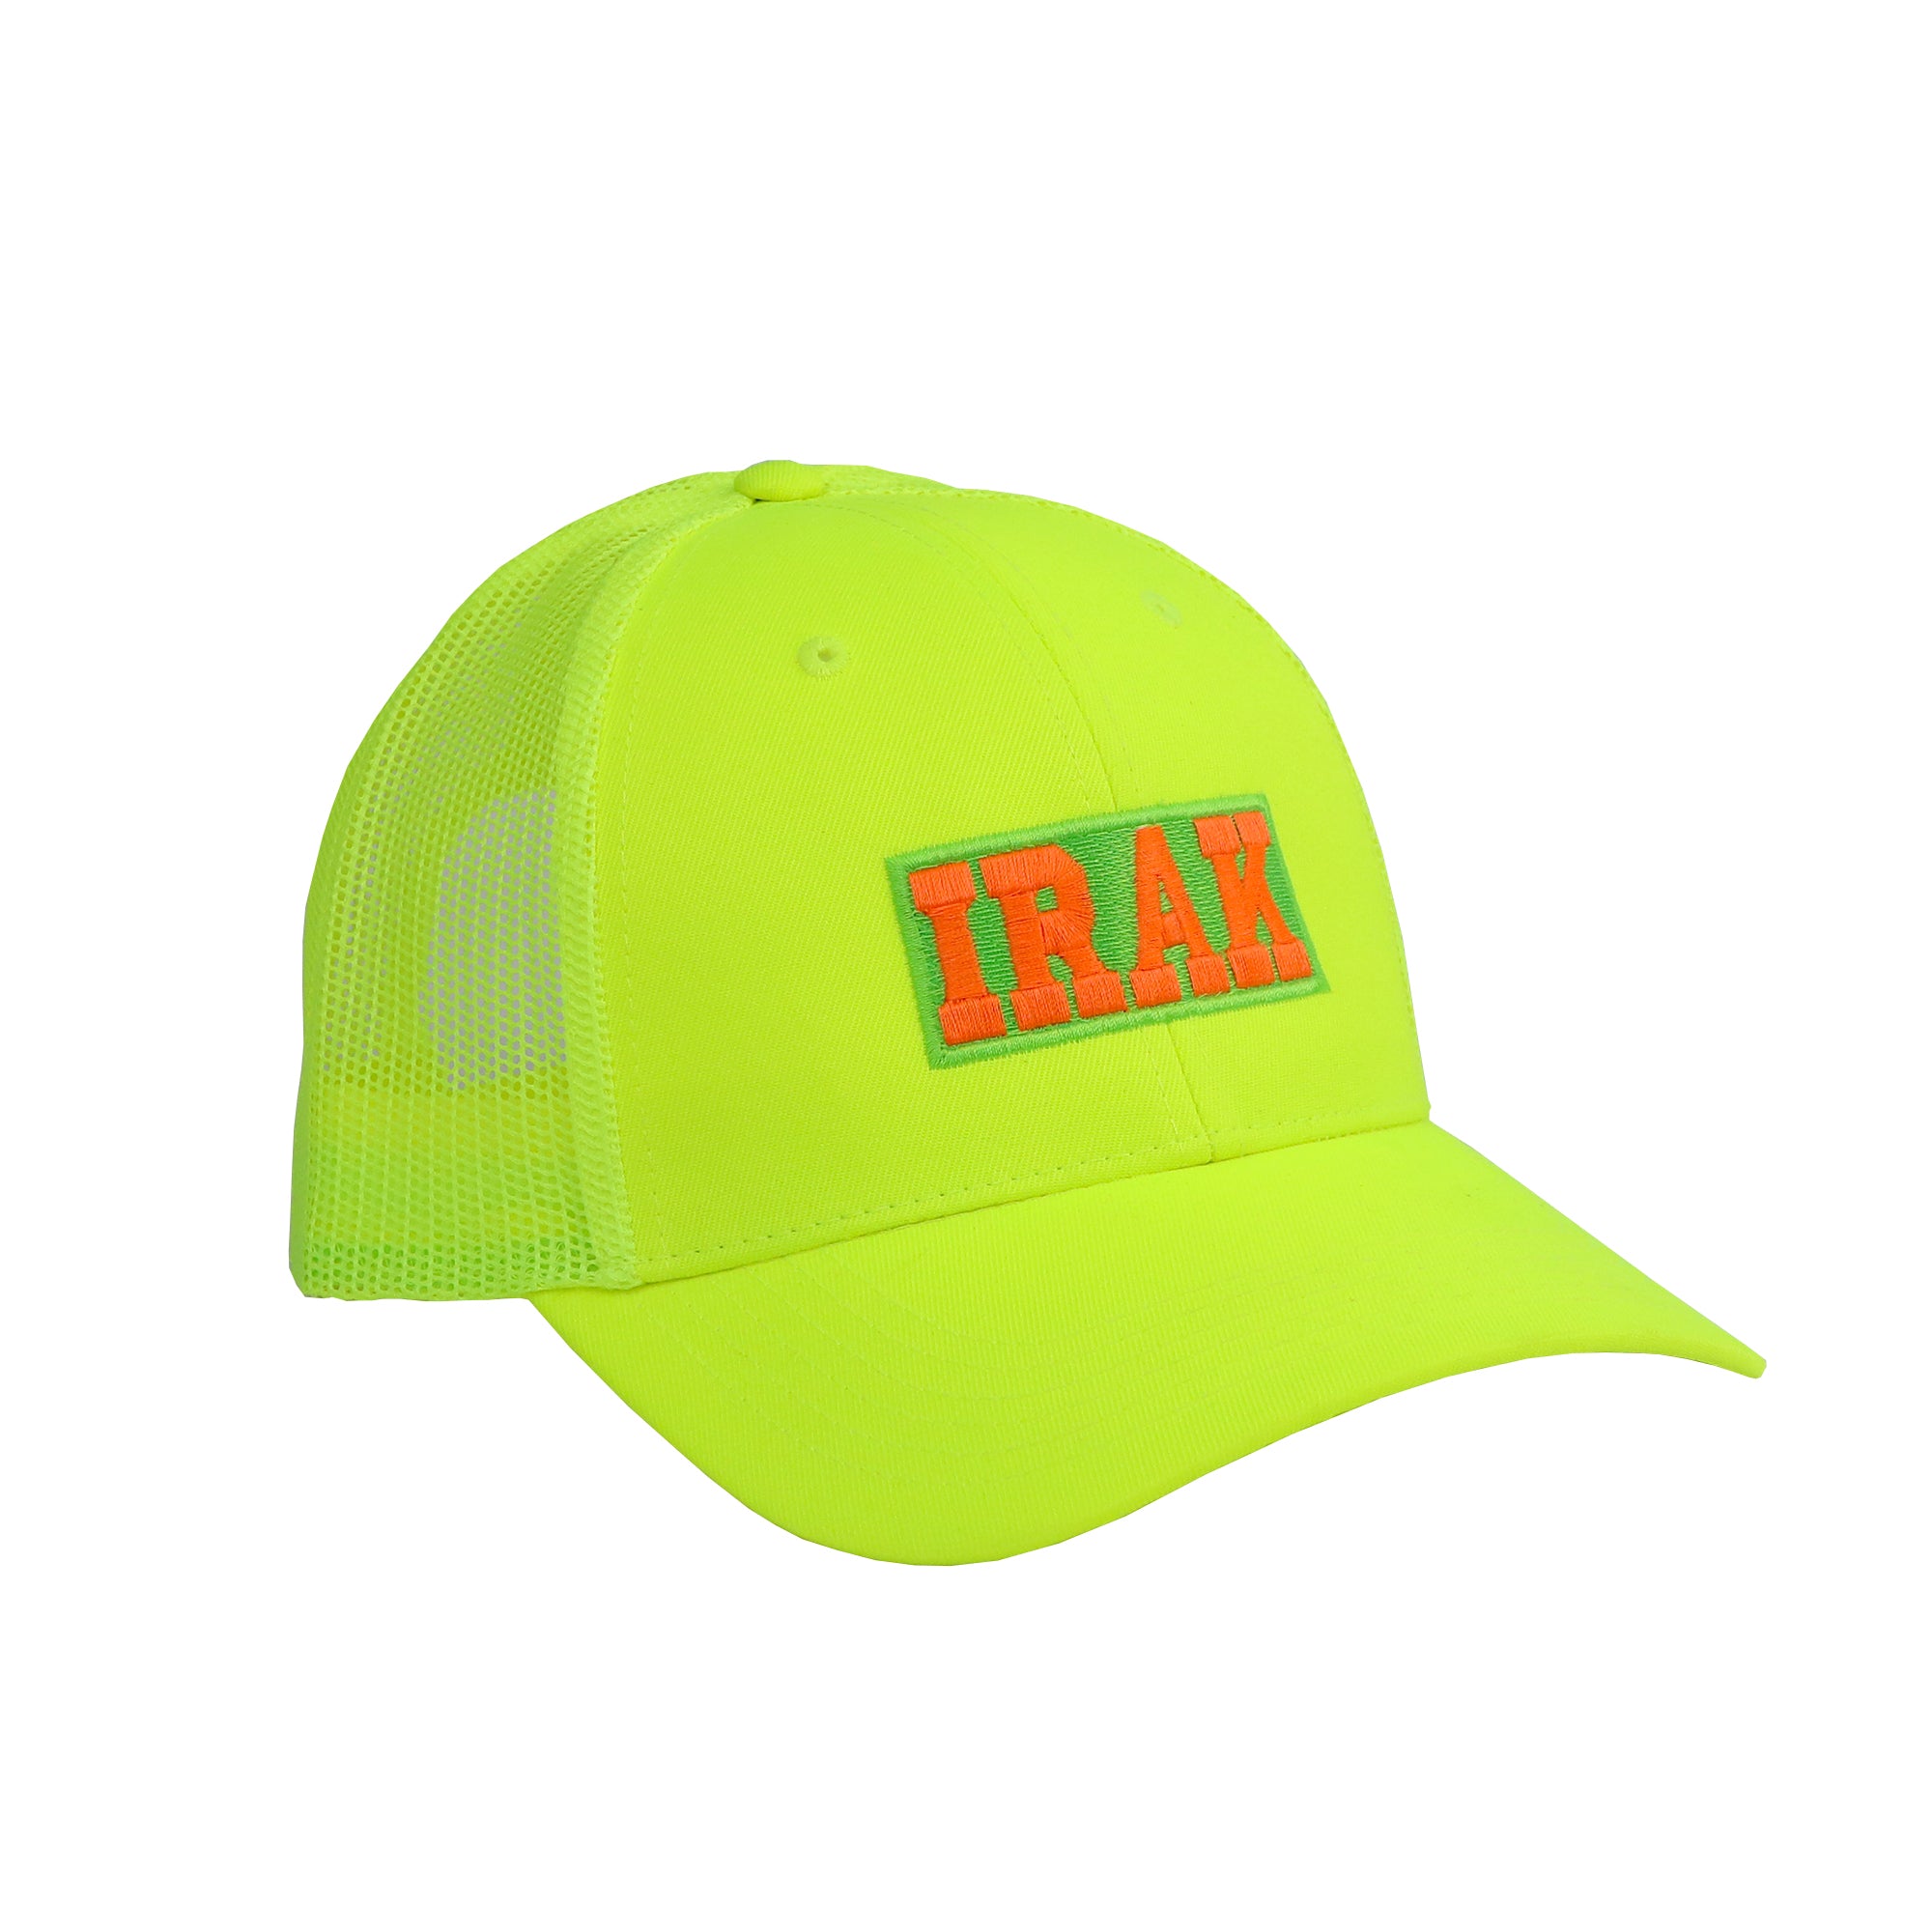 IRAK - Neon Irak Trucker Hat - (Neon Yellow) view 1